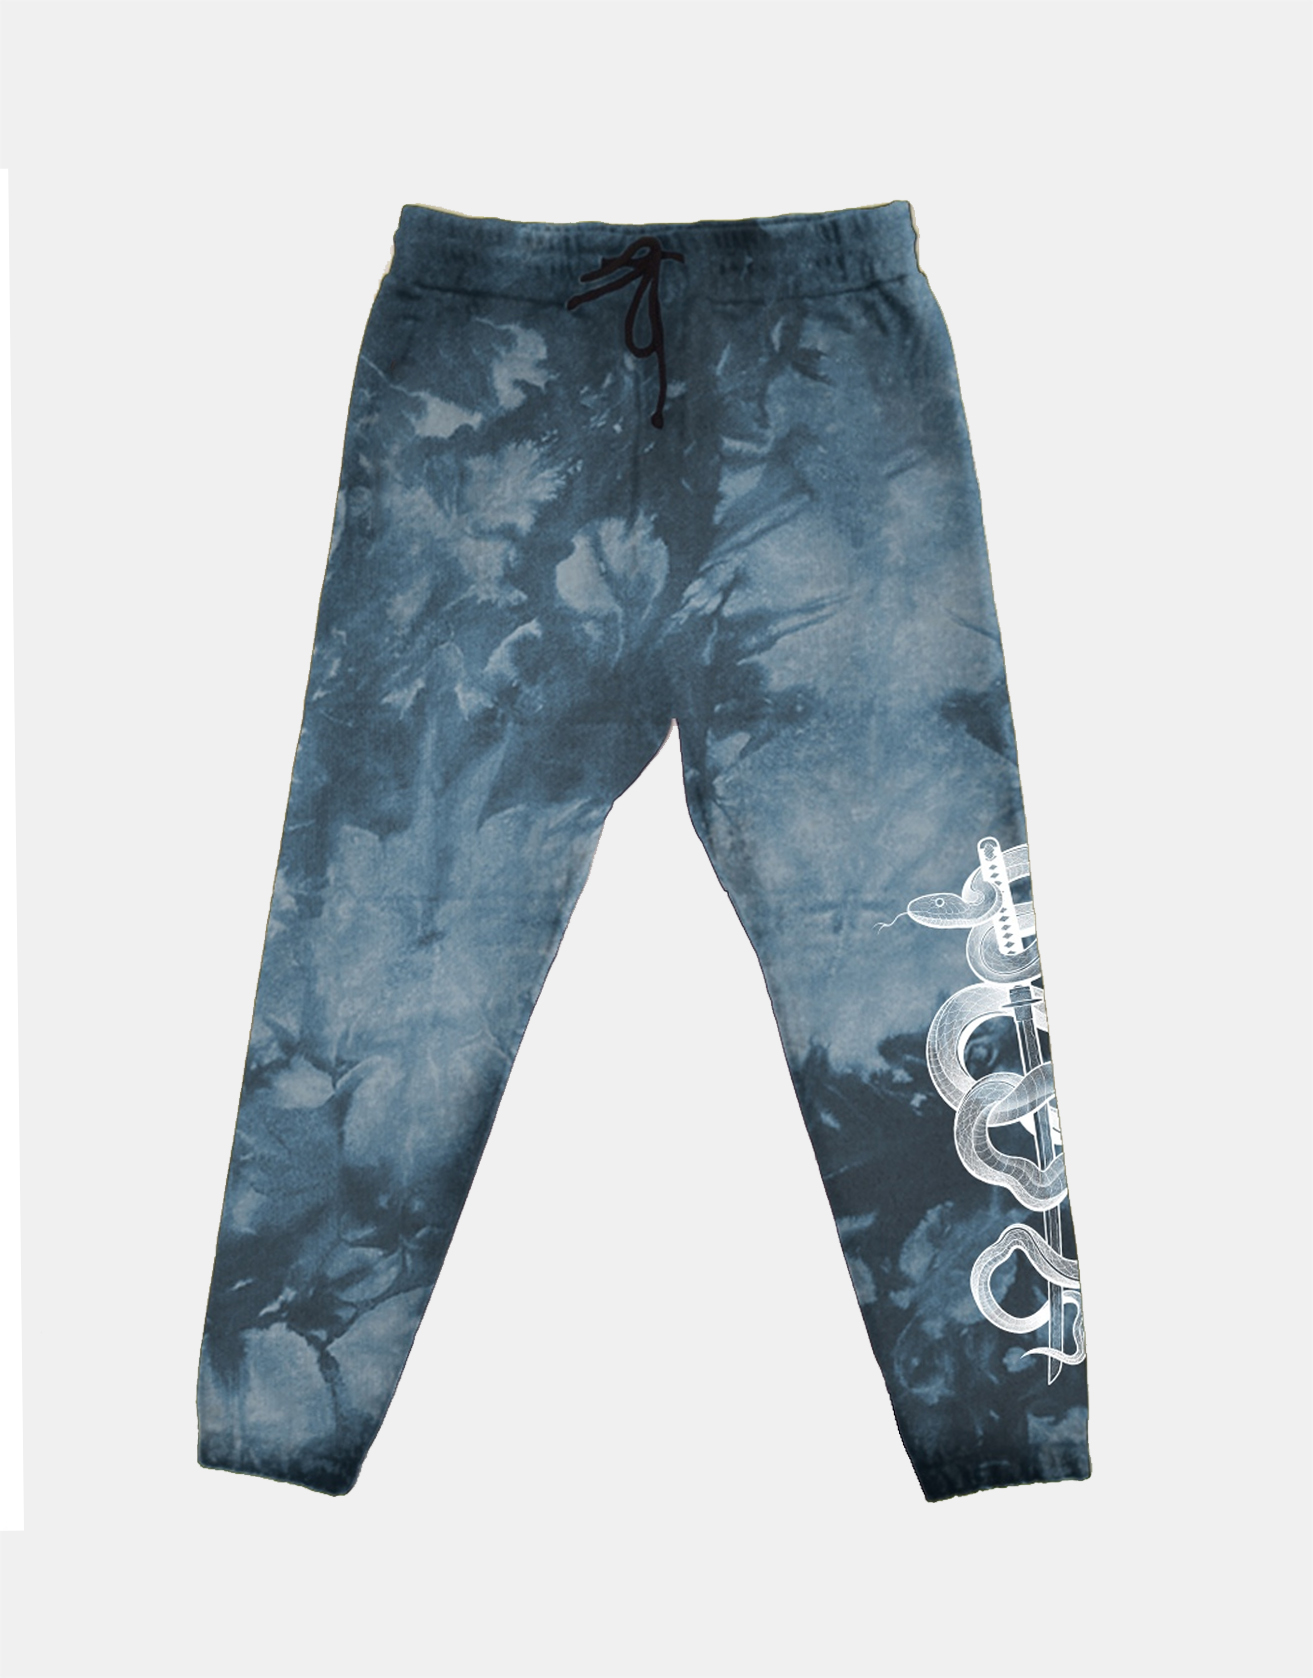 Aqua Tie-dye Snake Sweatpants / TECHWEAR CLUB / Techwear